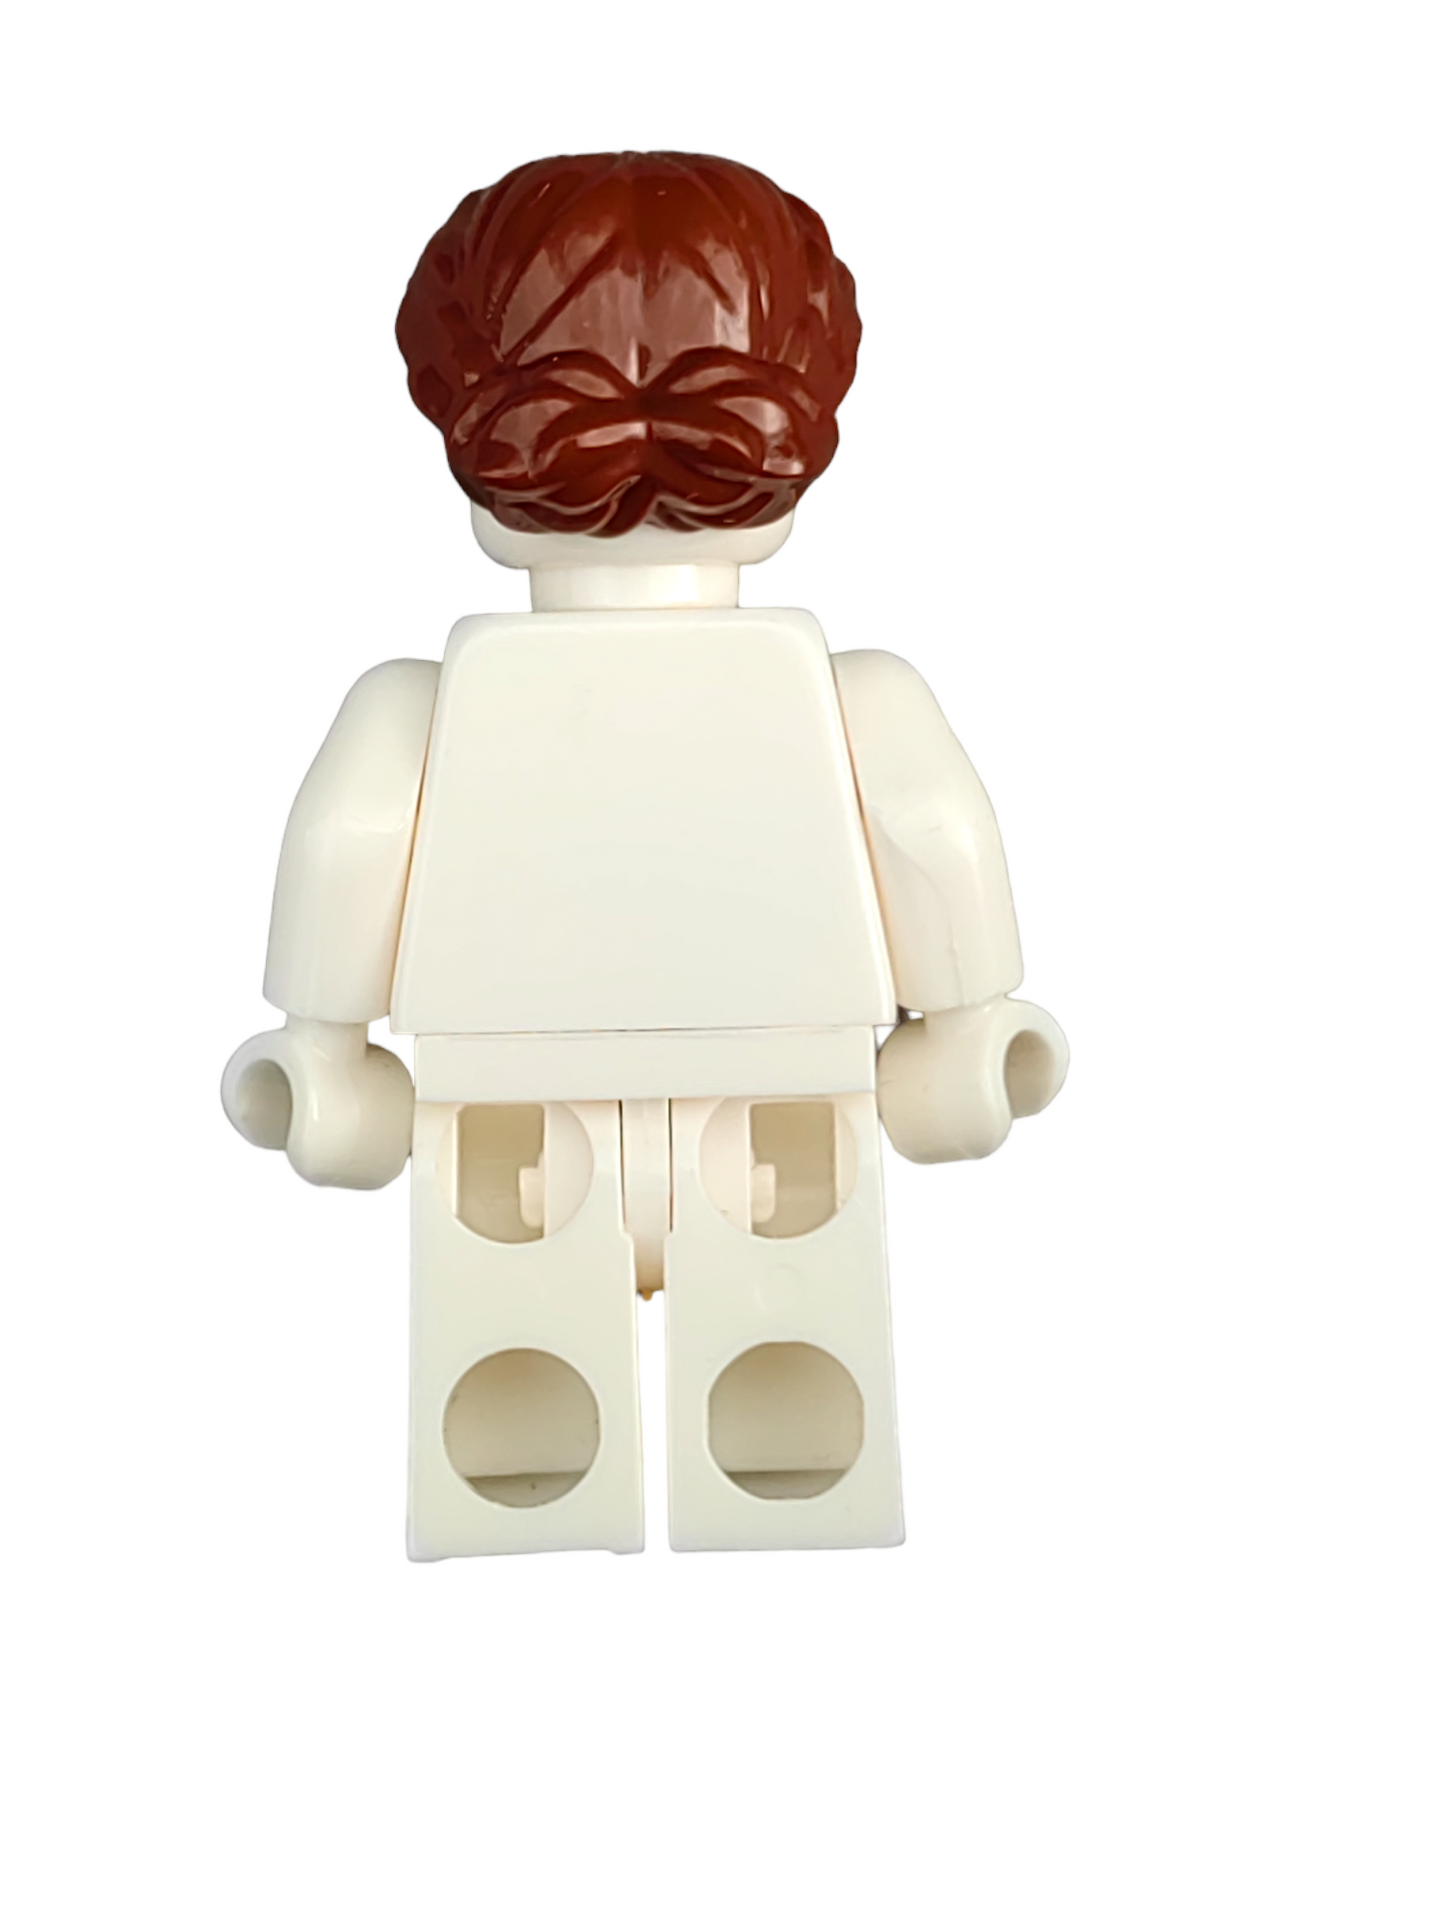 LEGO Wig, Brown Hair Short, Braided on Sides - UB1354